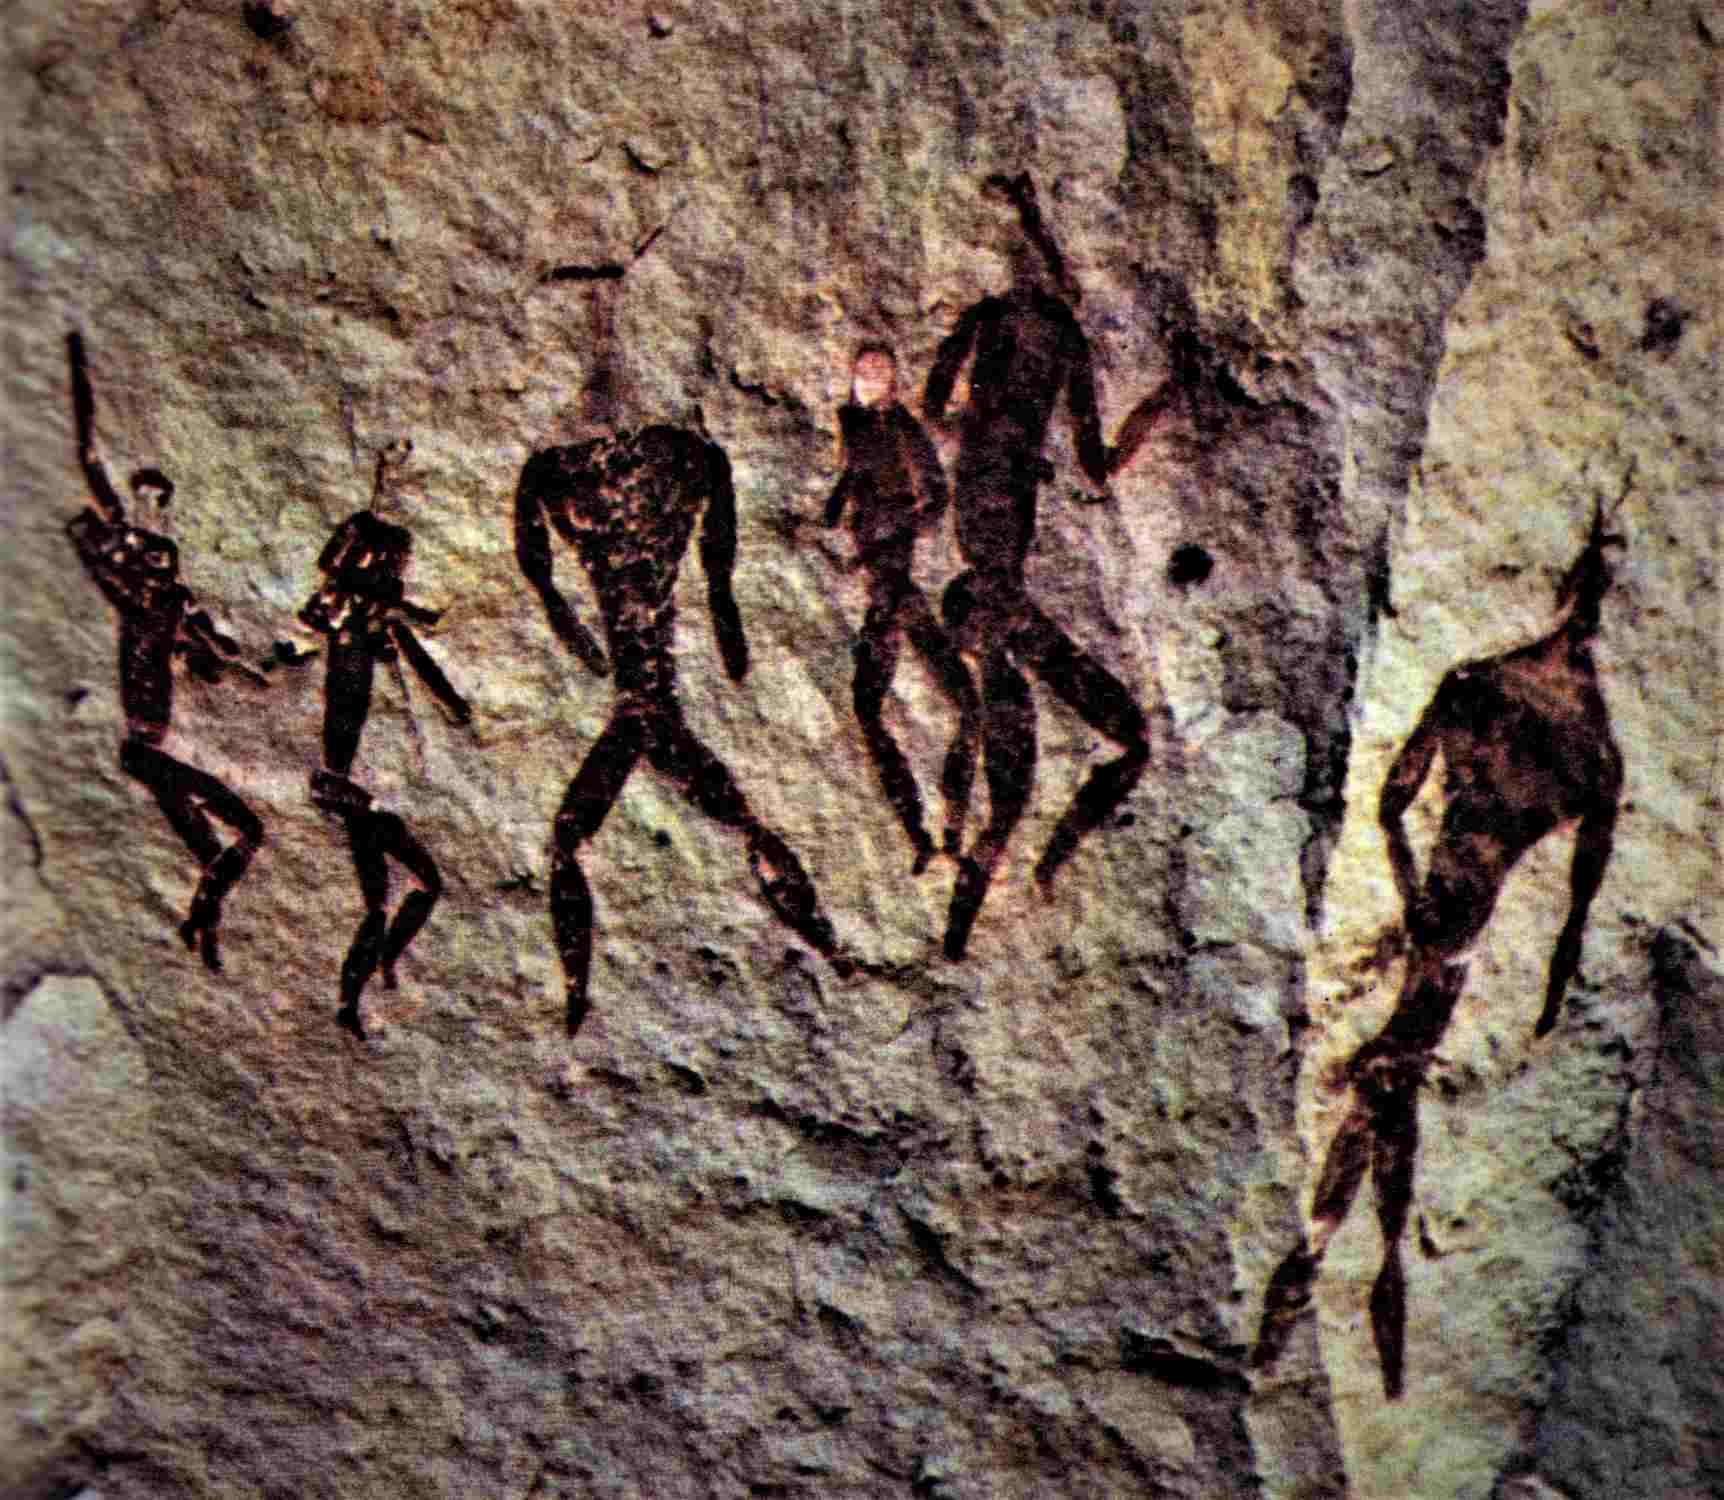 lukisan di Penampungan Batu Tabamyama di Pegunungan Drakensberg Afrika Selatan secara grafis menggambarkan "Pemberontakan Igigi". Tiga Makhluk yang membelakangi kita adalah "Igigi" - Anunnaki, kedua dari kiri dapat diidentifikasi dengan "Tas Tangan" di lengan kanannya. Lukisan ini sepertinya menyarankan "Situasi Konflik".